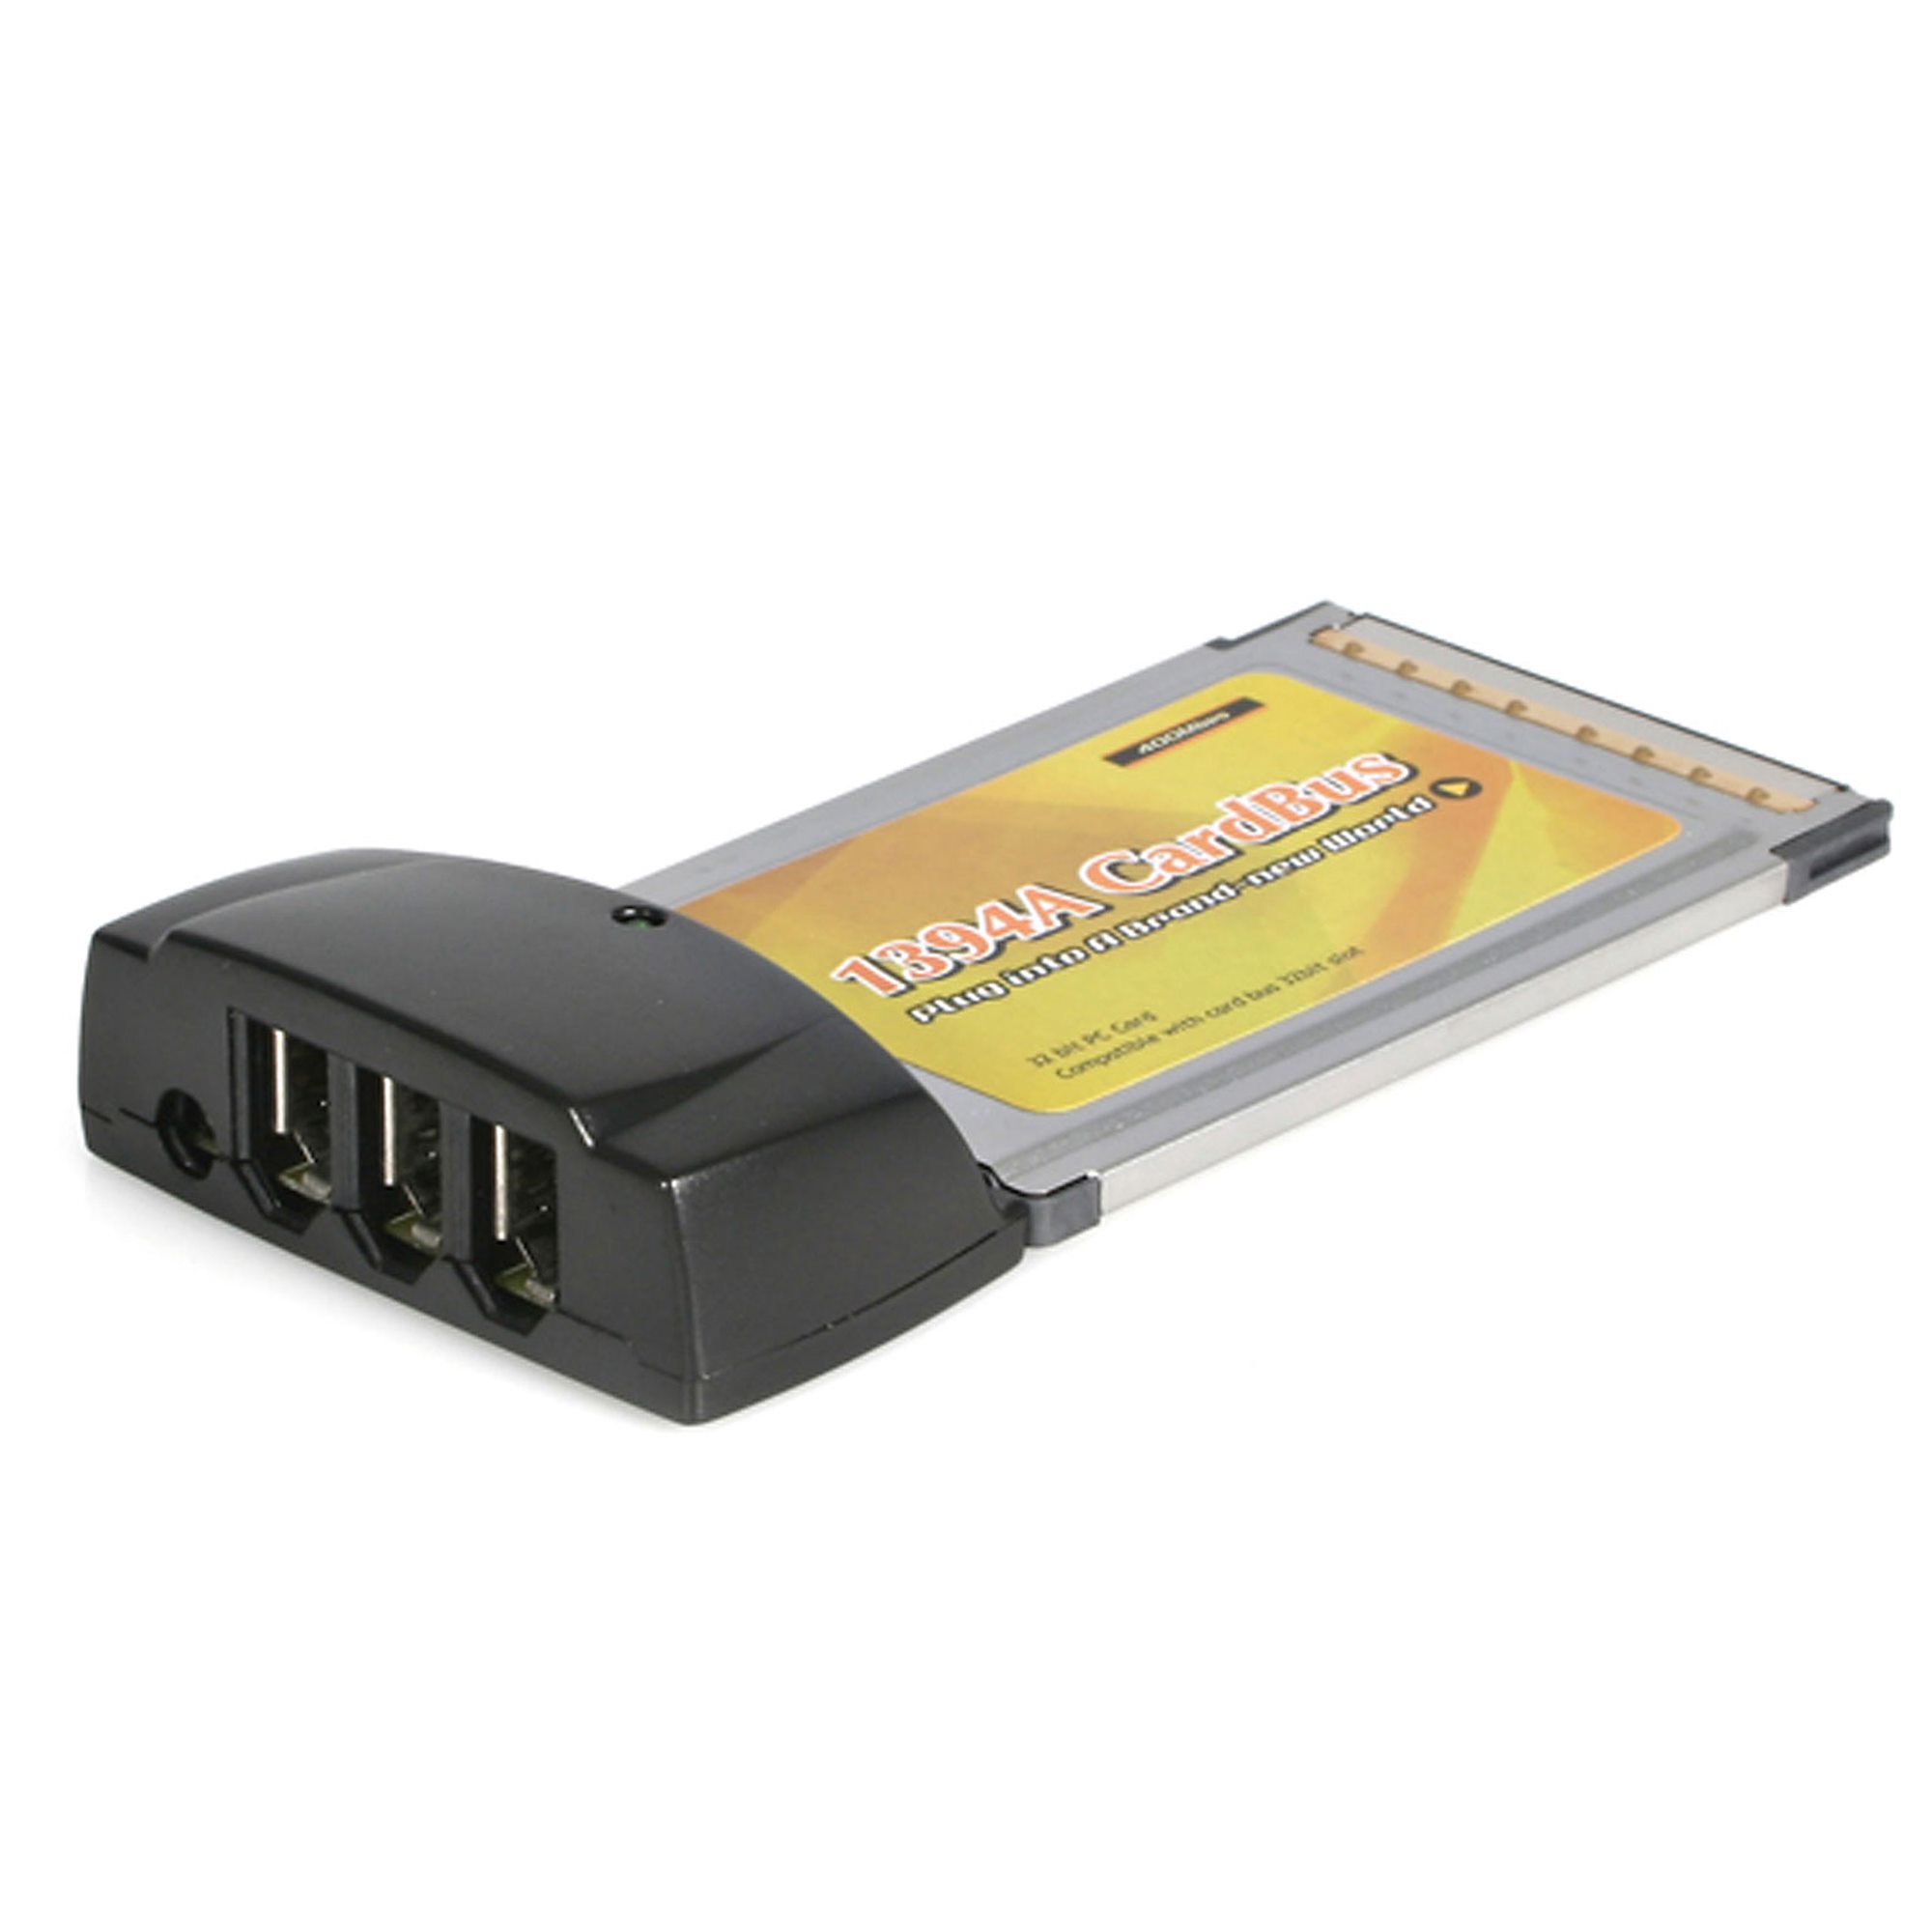 32bit Card Bus Adapter Dynex IEEE 1394 Firewire Notebook Card 